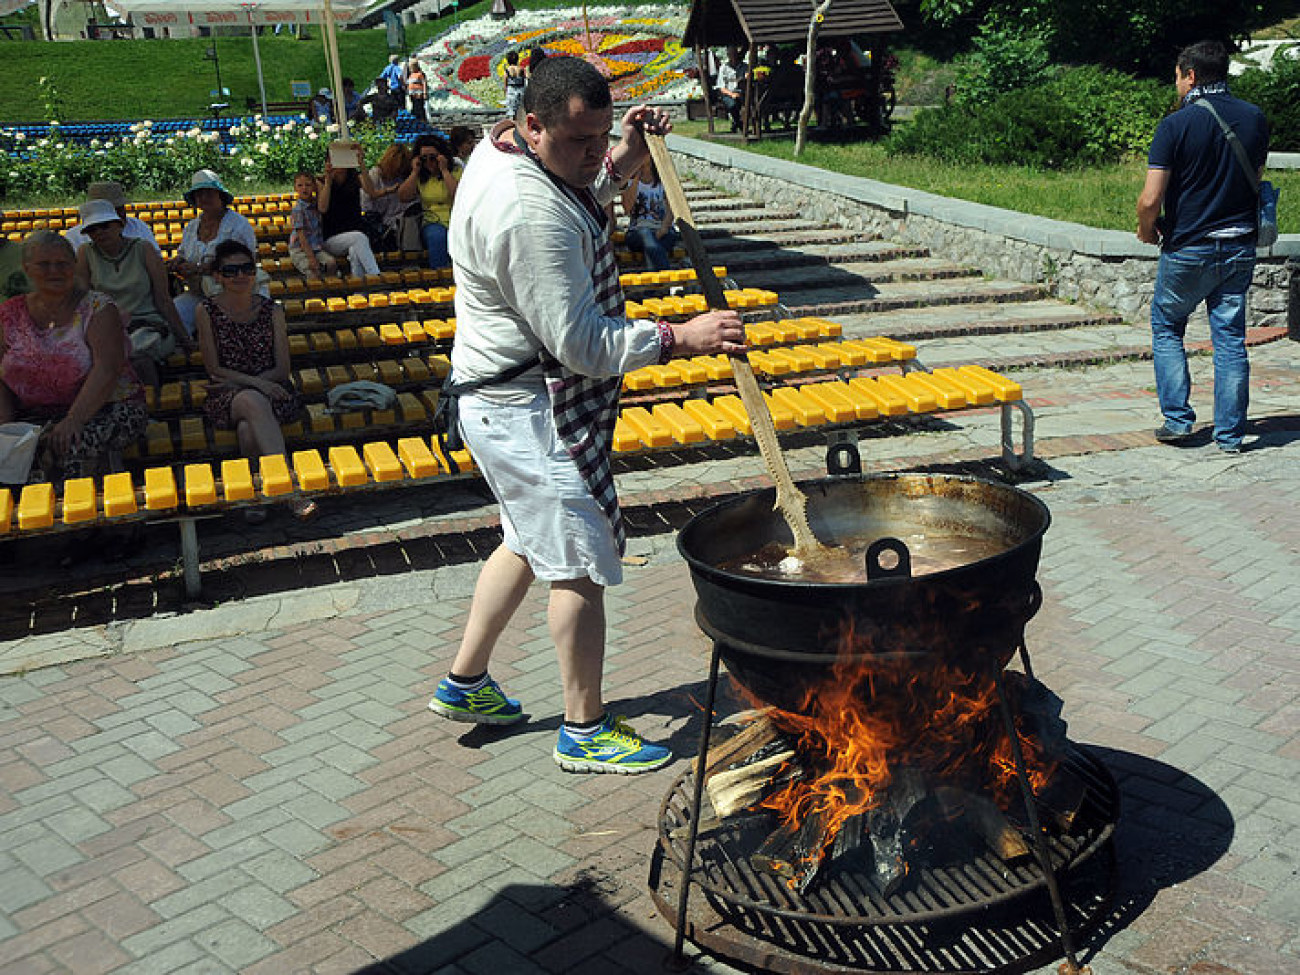 Борщ клубничный или ирландский?.. В Киеве проходит Фестиваль борща и кулеша